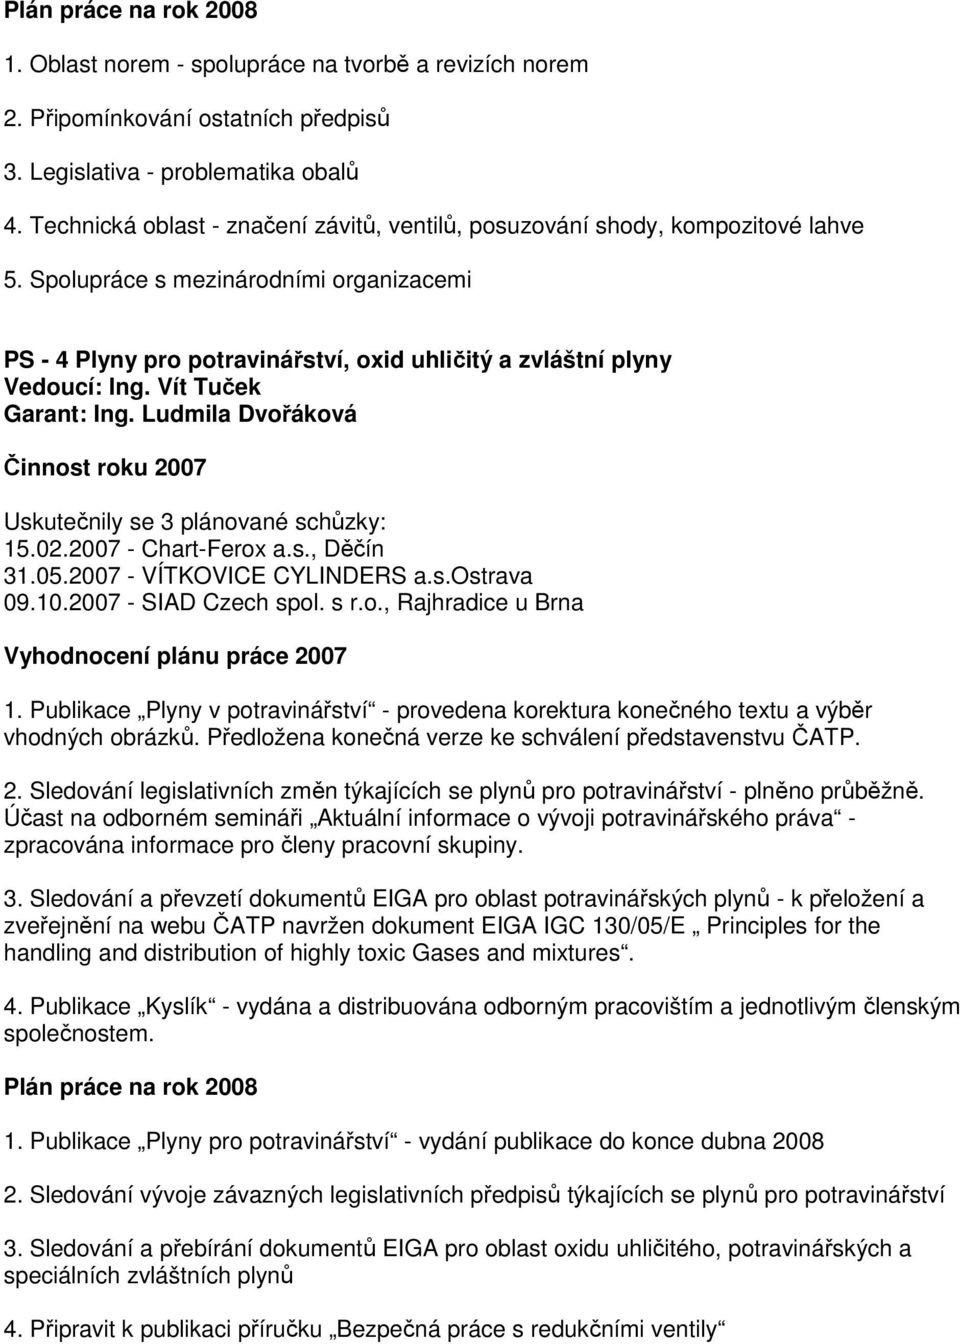 Vít Tuček Garant: Ing. Ludmila Dvořáková Činnost roku 2007 Uskutečnily se 3 plánované schůzky: 15.02.2007 - Chart-Ferox a.s., Děčín 31.05.2007 - VÍTKOVICE CYLINDERS a.s.ostrava 09.10.